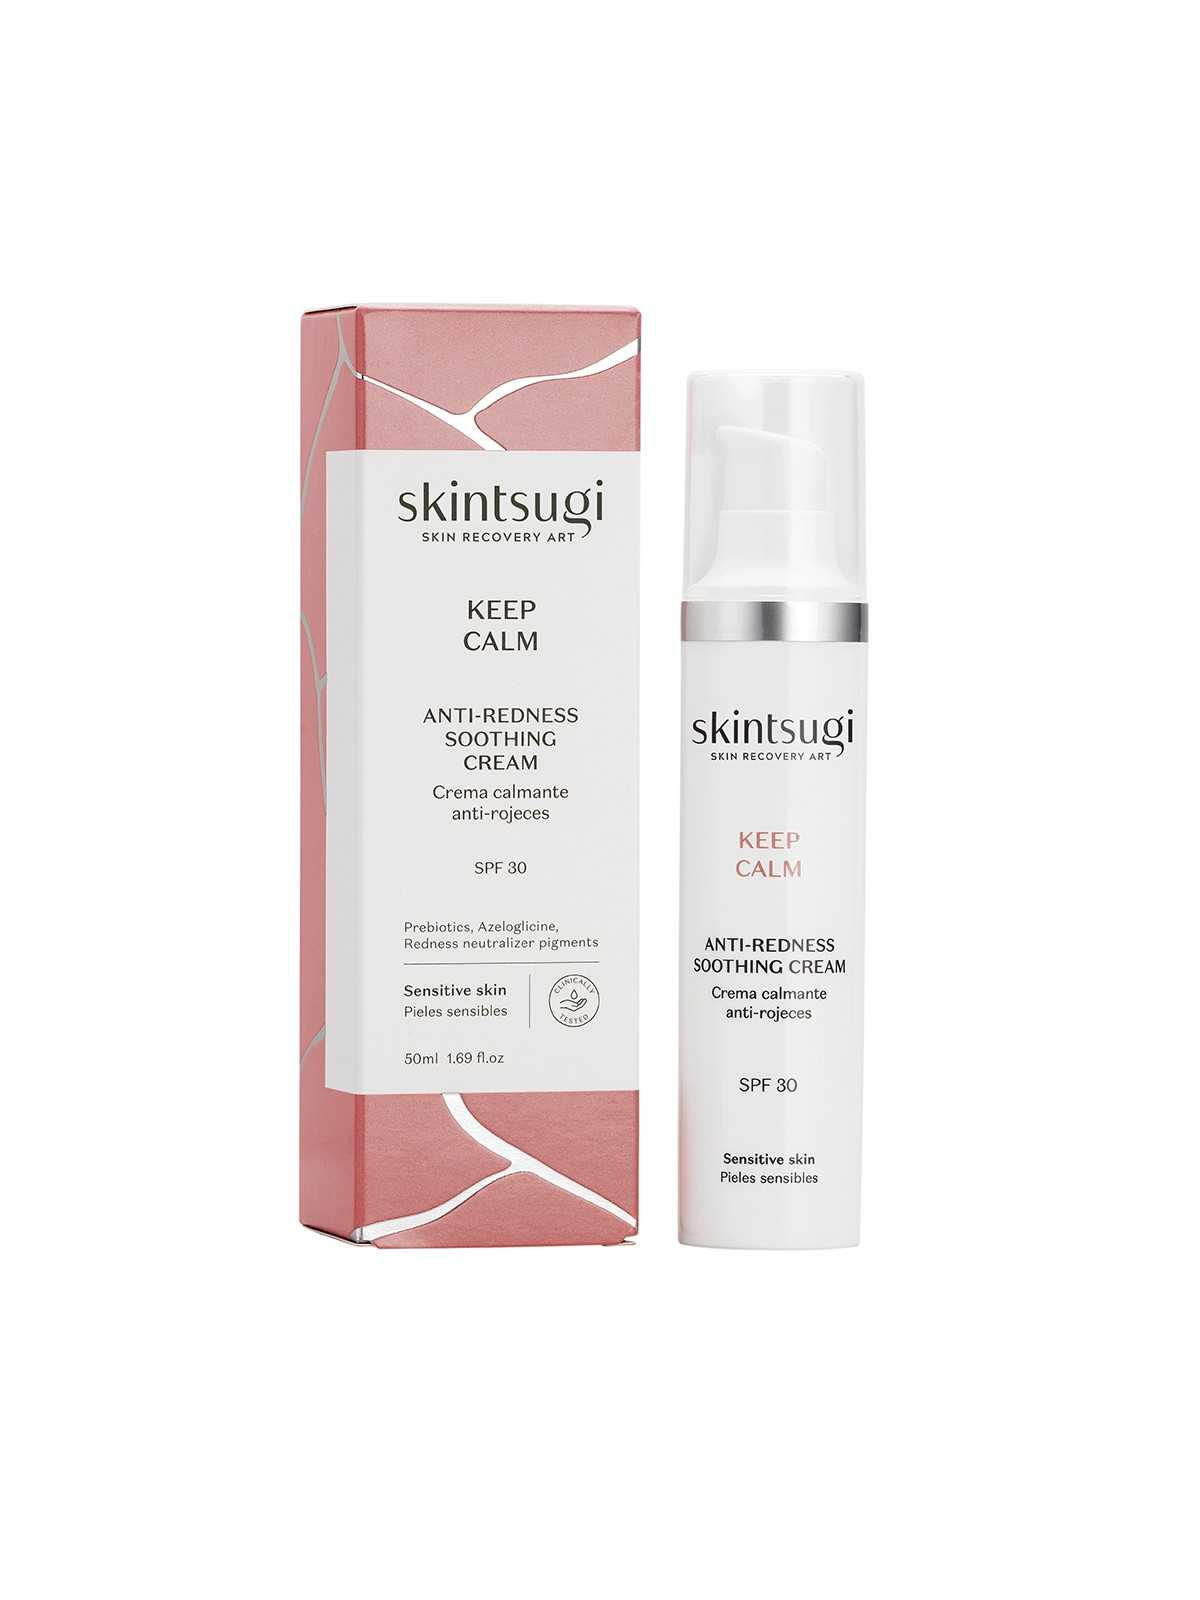 Comprar Skintsugi Crema calmante anti-rojeces KEEP CALM 50ml en Tratamiento facial por sólo 16,95 € o un precio específico de 14,41 € en Thalie Care